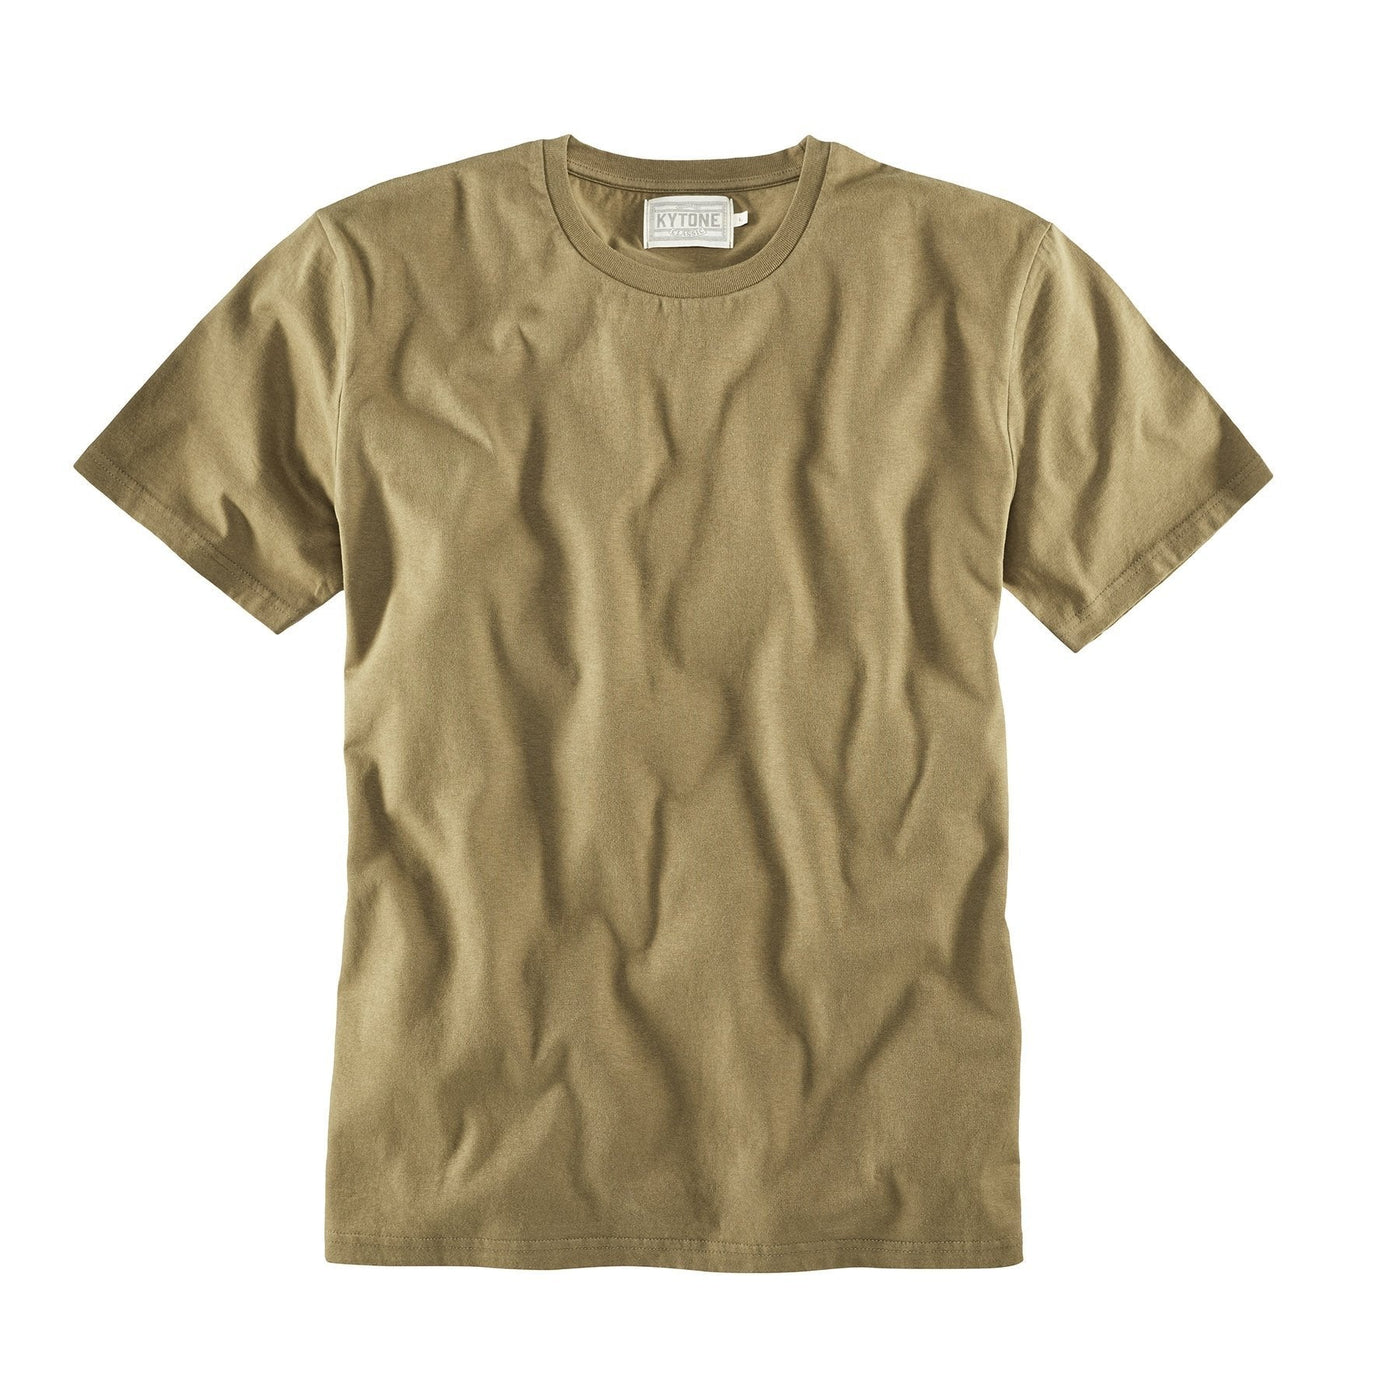 Kytone T-Shirt Basic Green